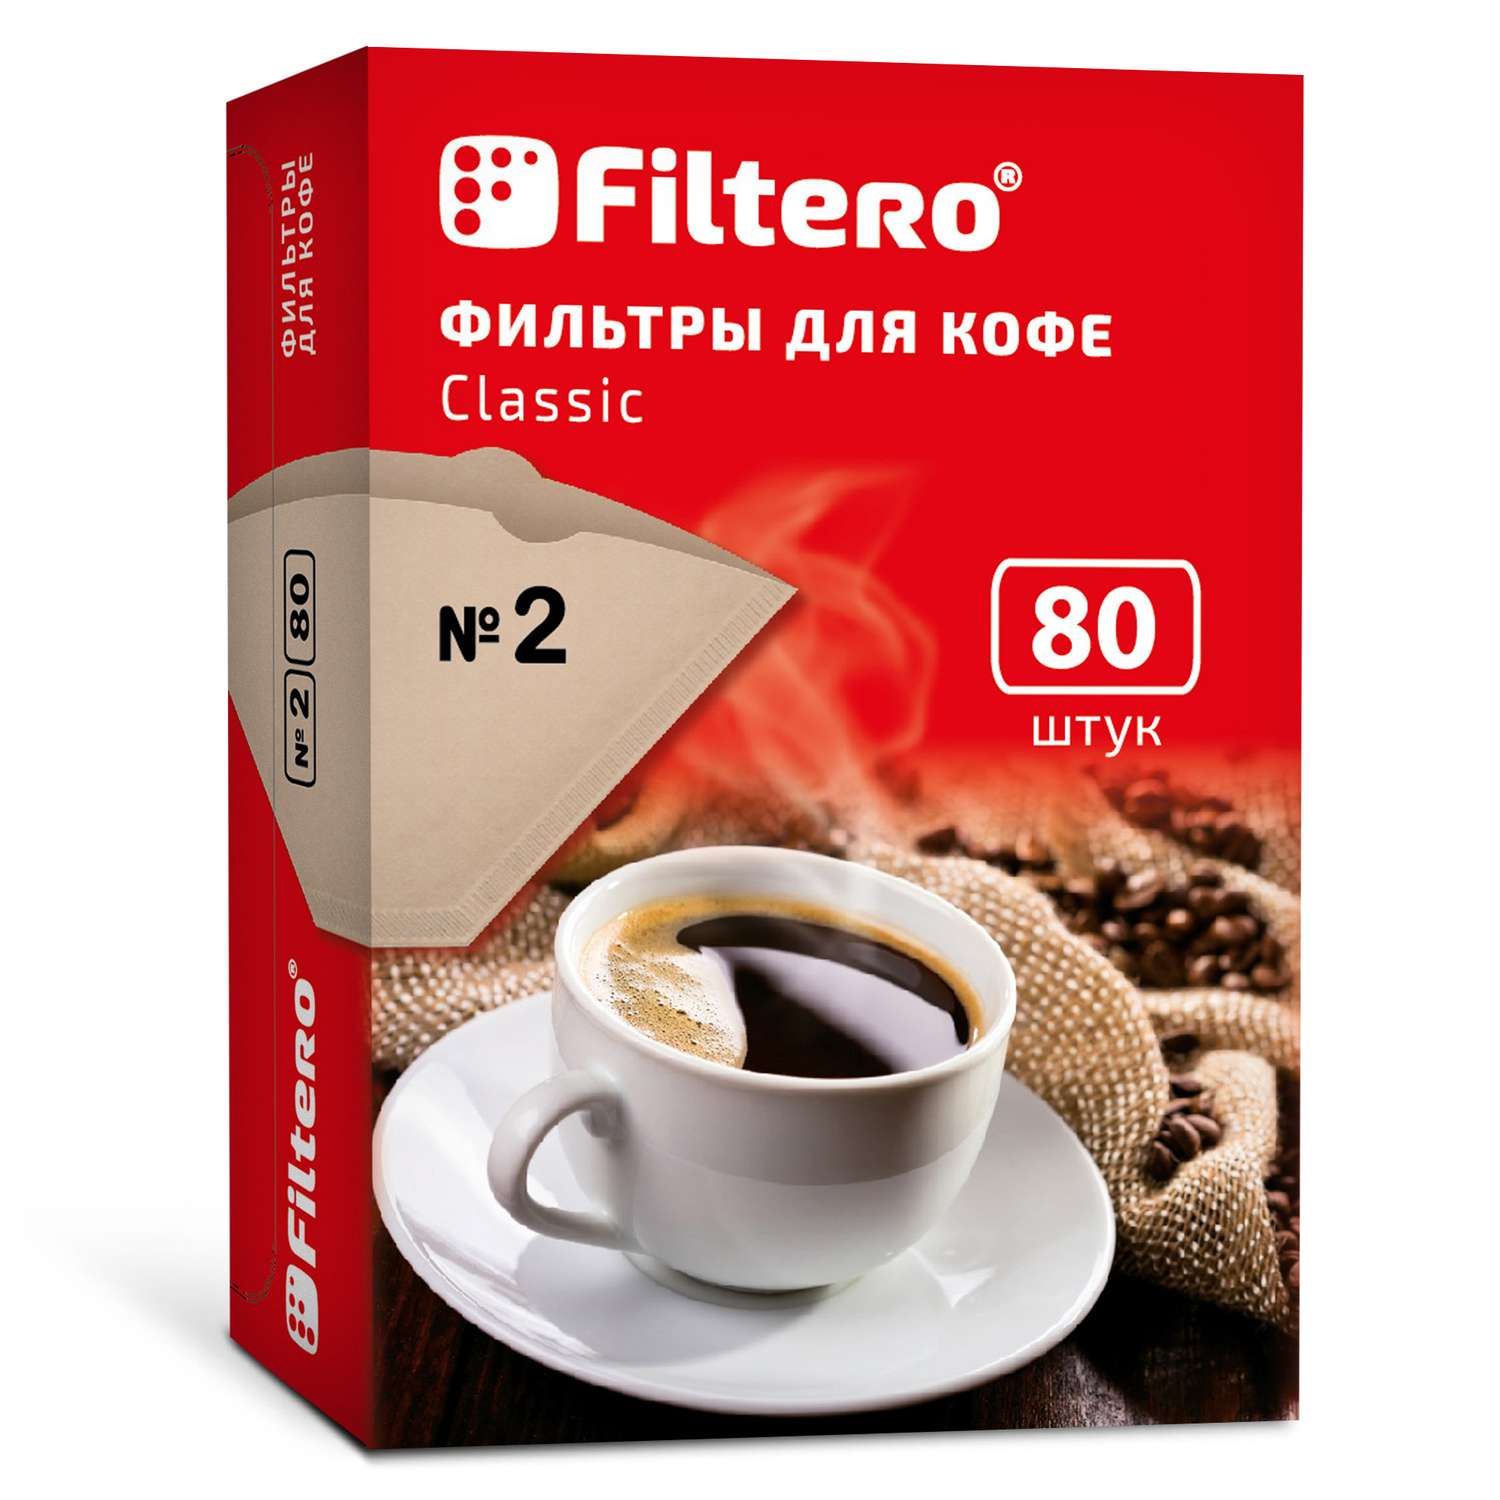 Фильтры для кофеварки Filtero №2/80 коричневые Classic - фото 1